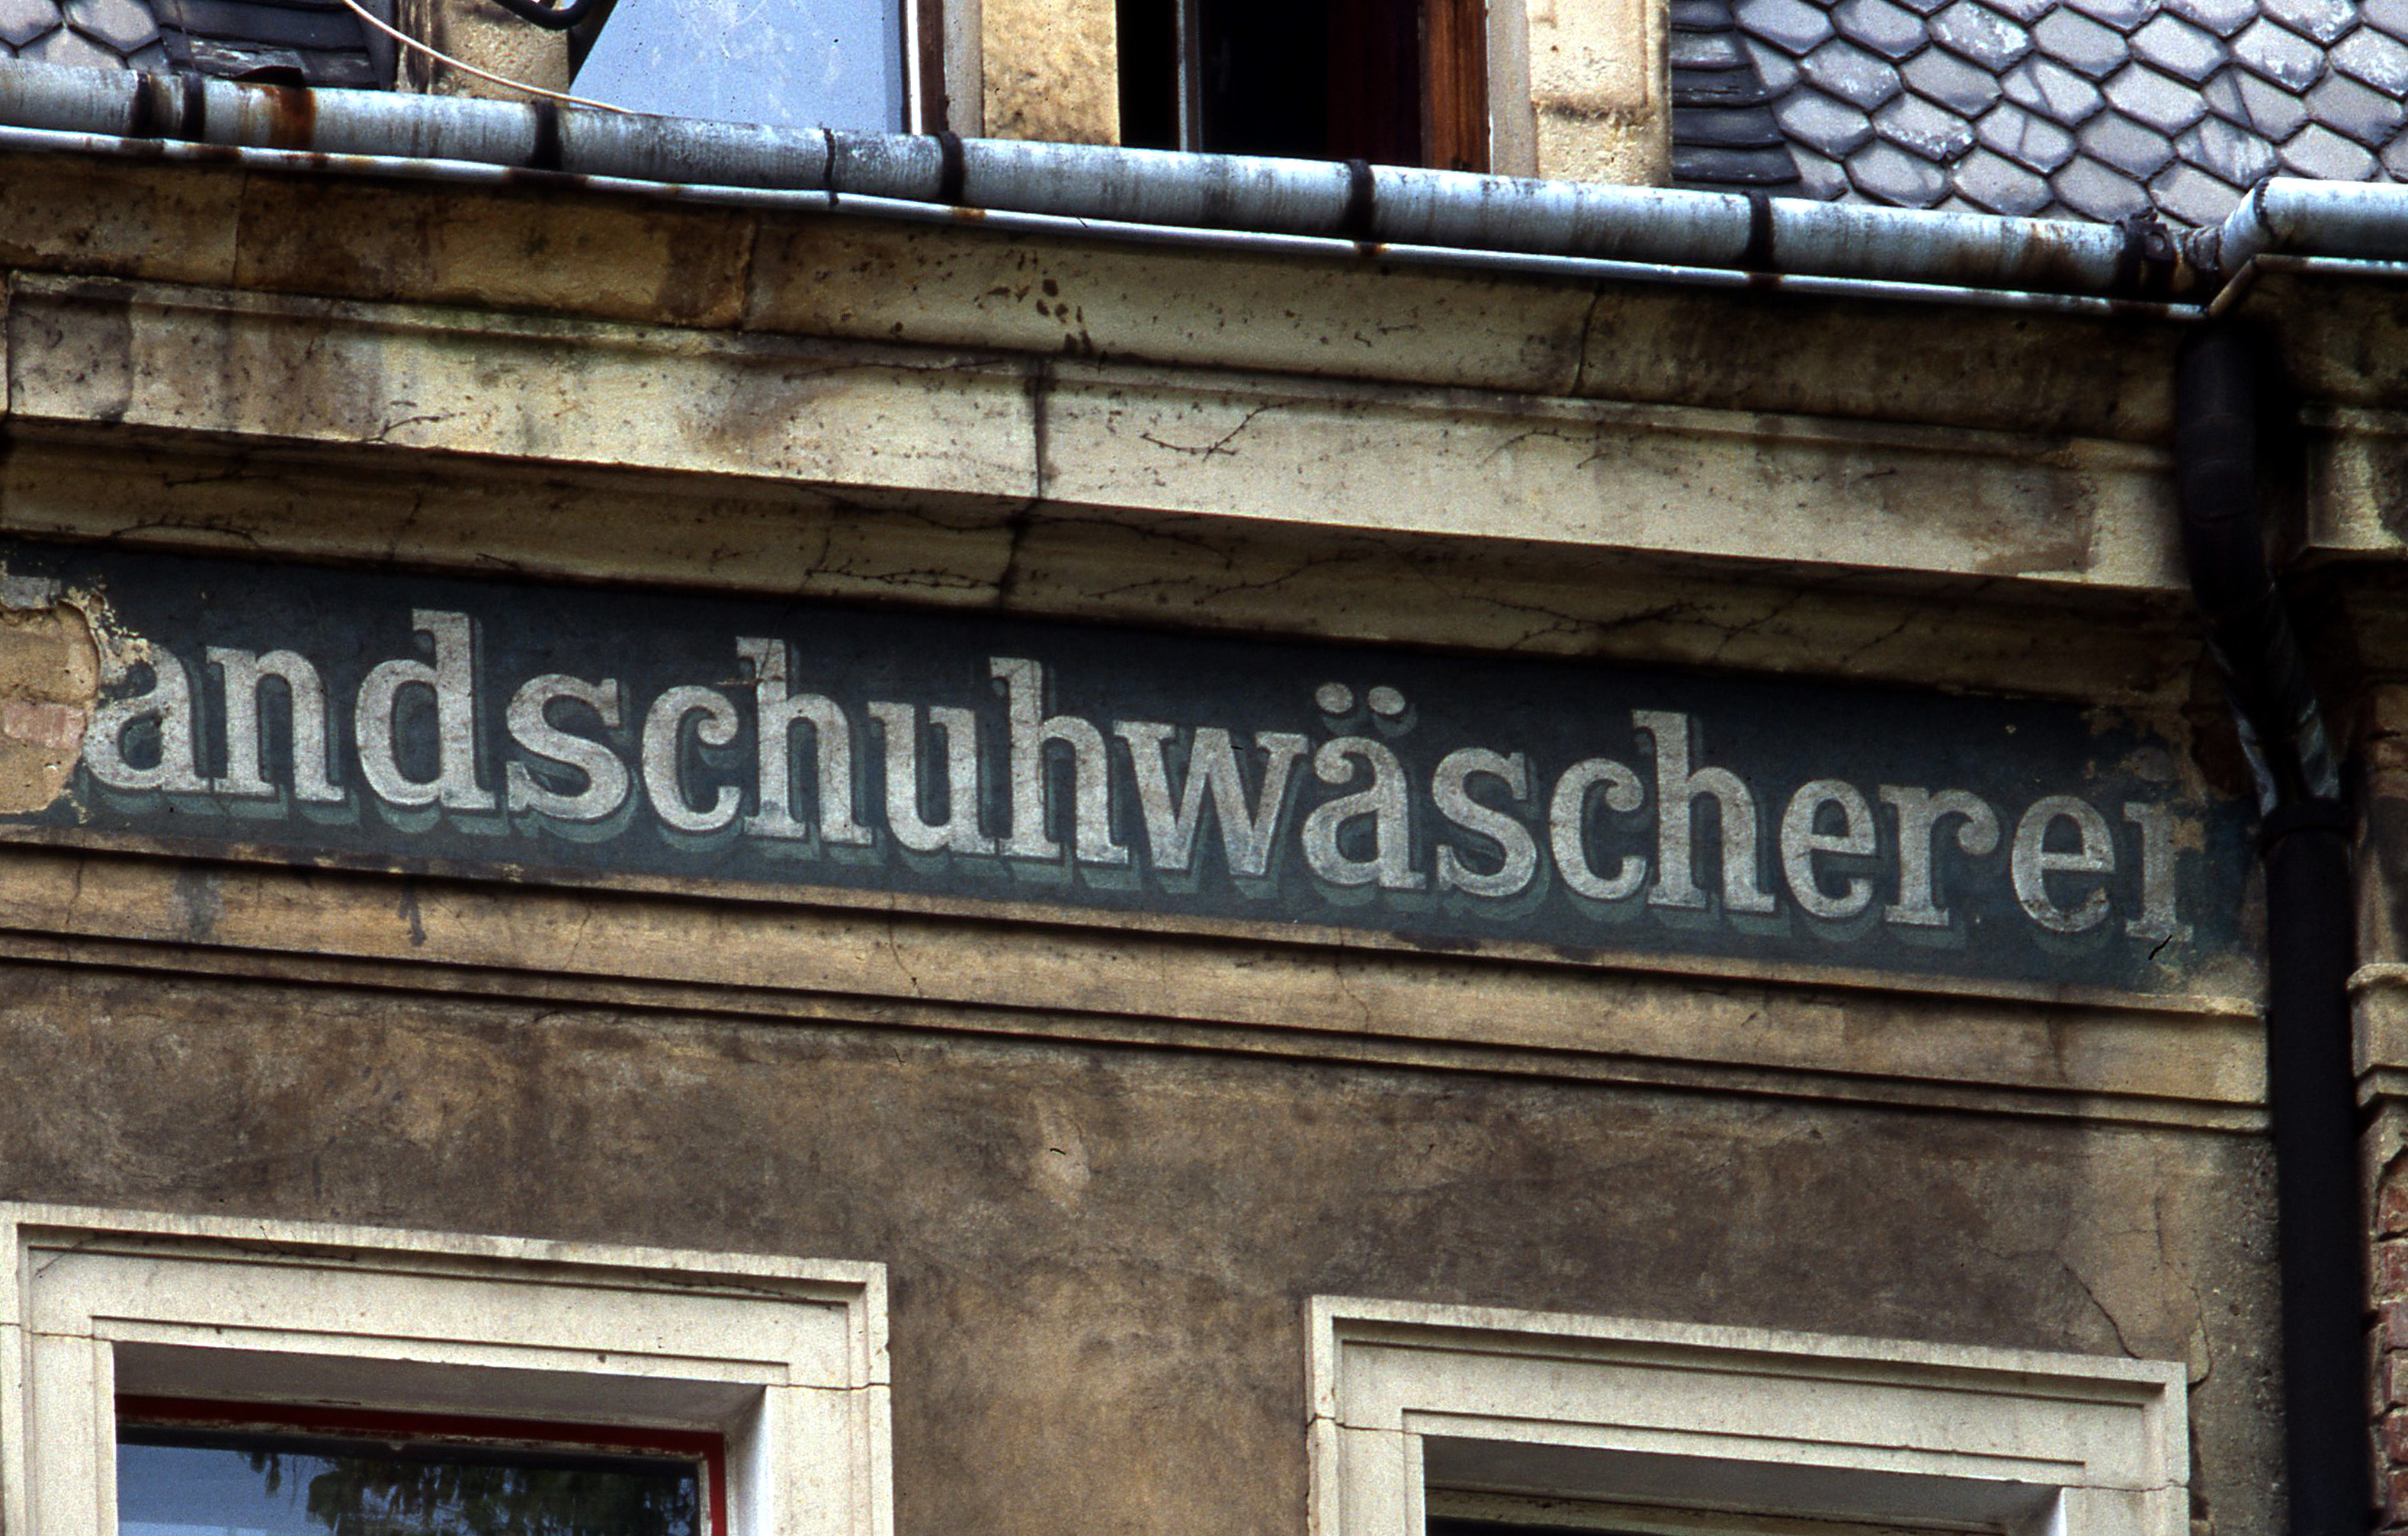 Ansicht einer verfallenen Fassade. Unter dem Dach ist der verwitterte Schriftzug "Handschuhwäscherei" zu erkennen.